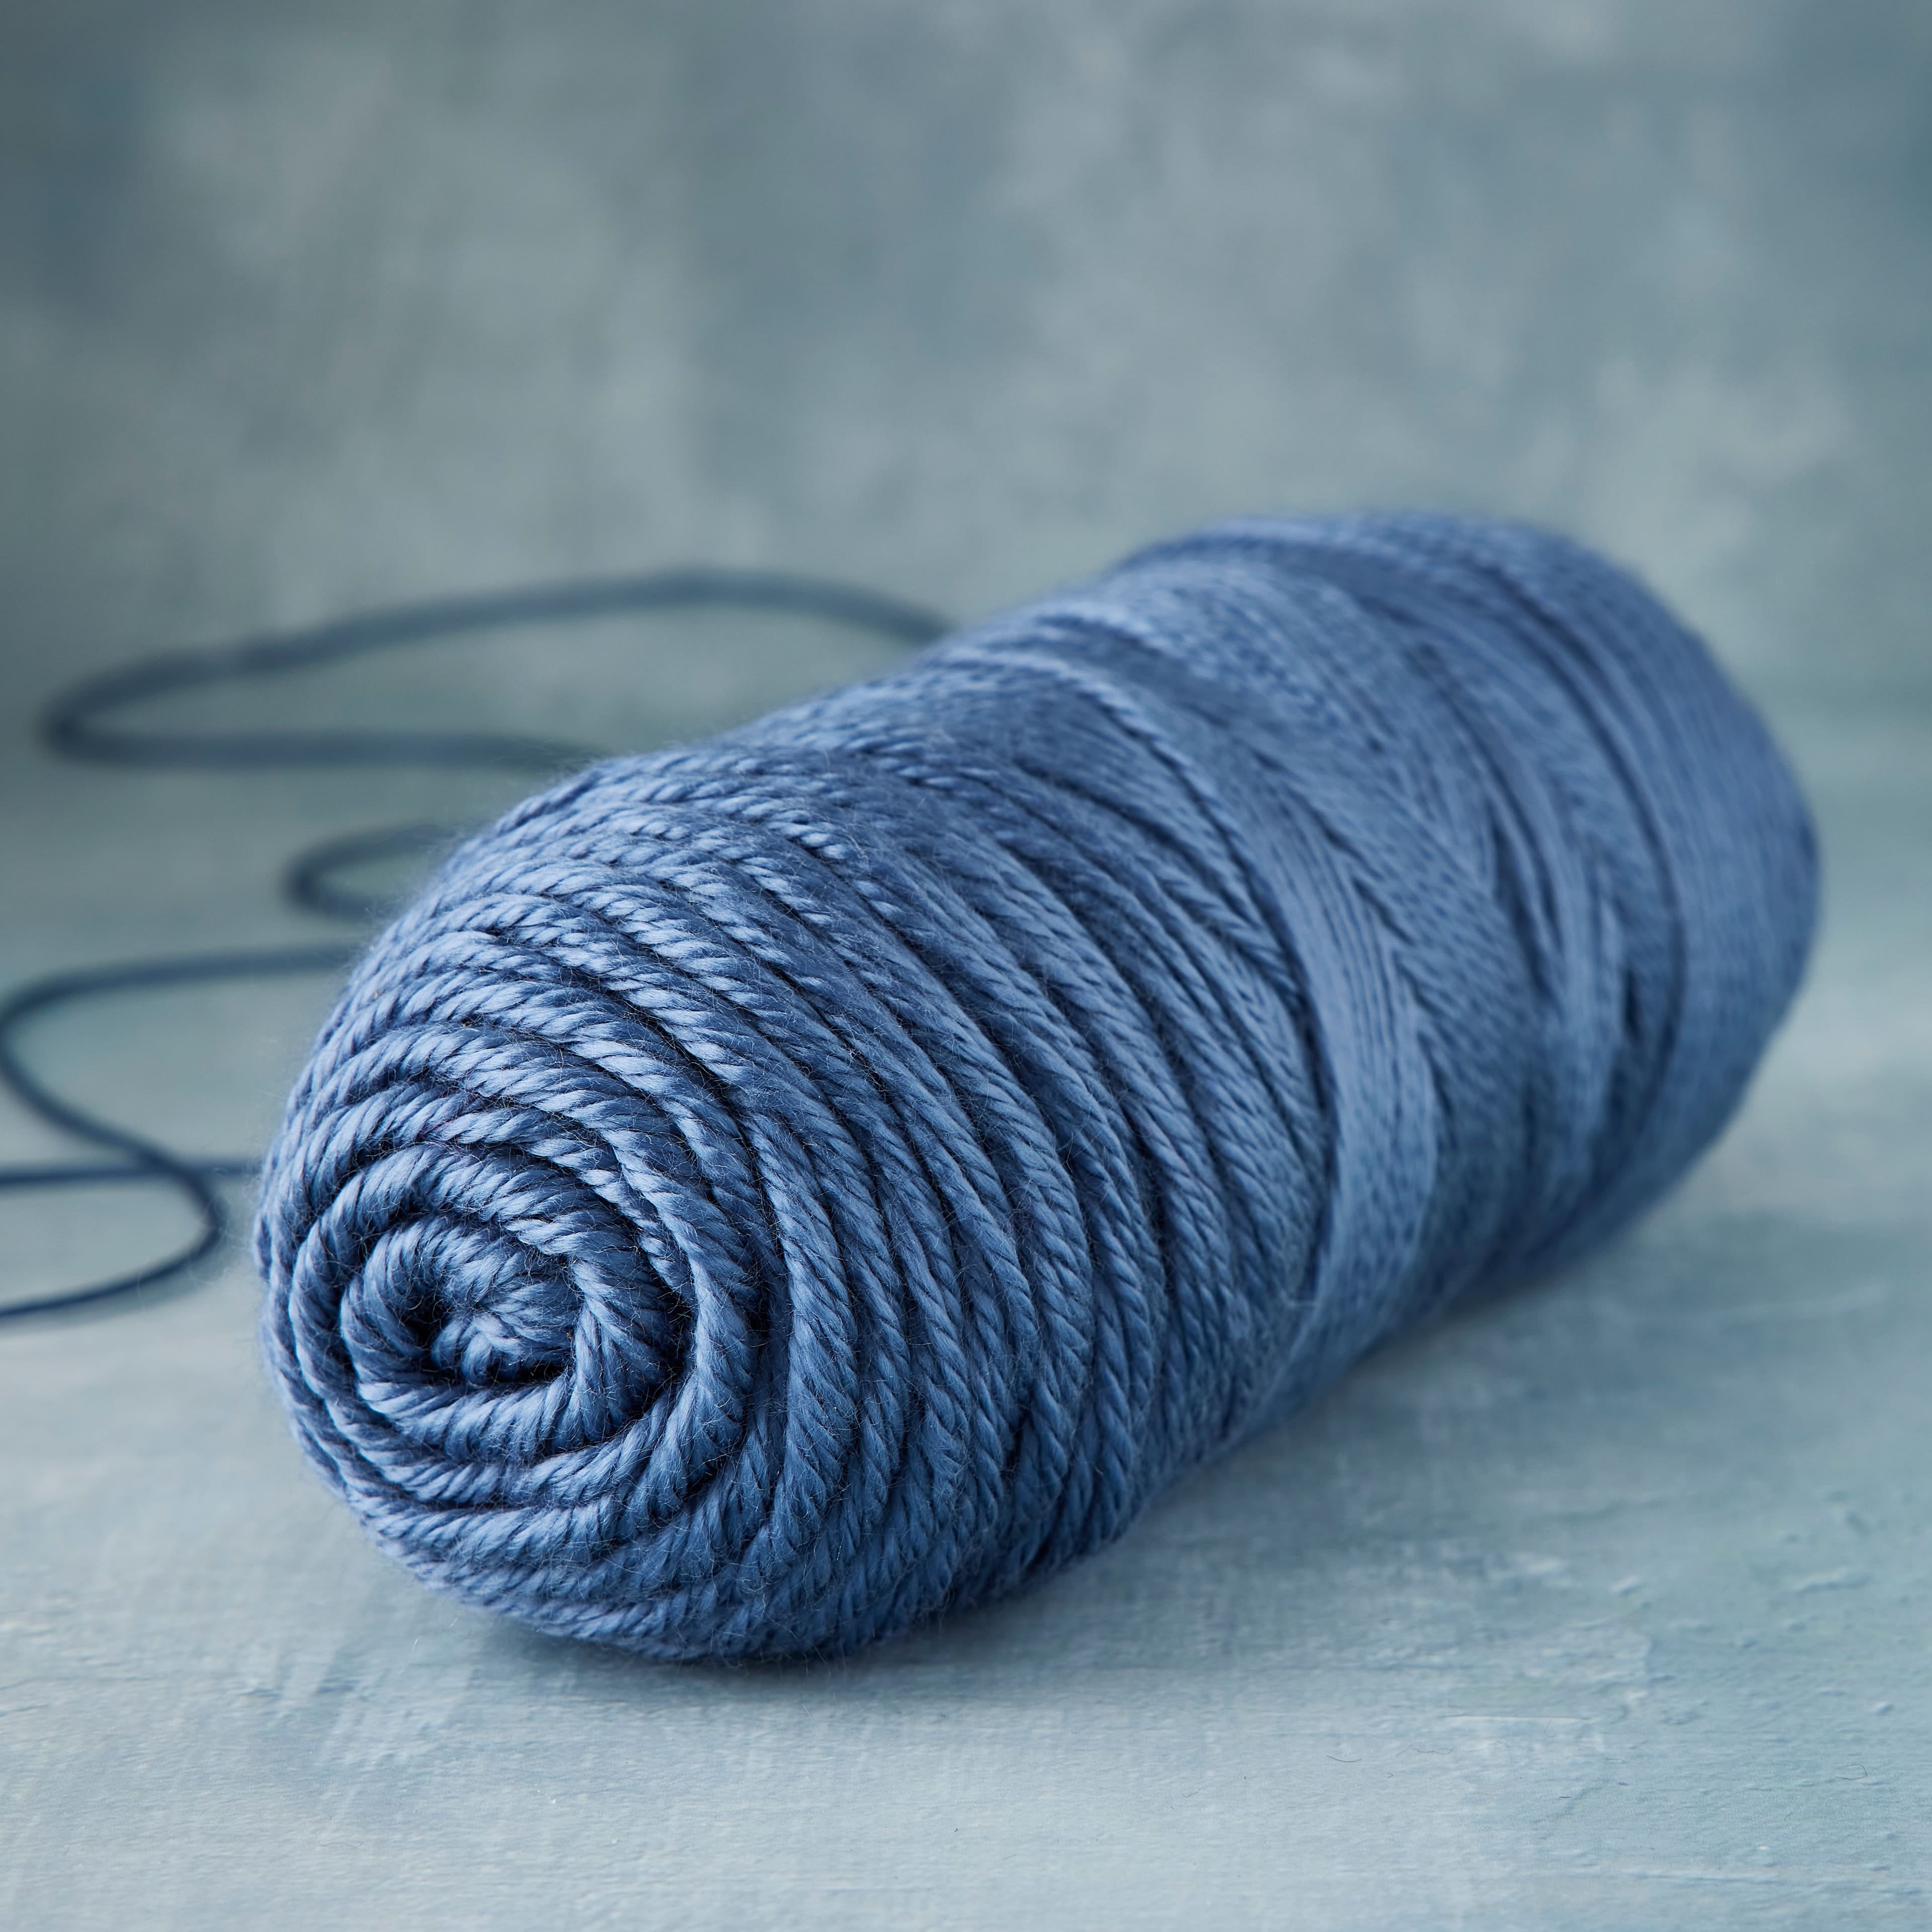 Soft & Shiny Solid Yarn by Loops & Threads® in Aqua Blue